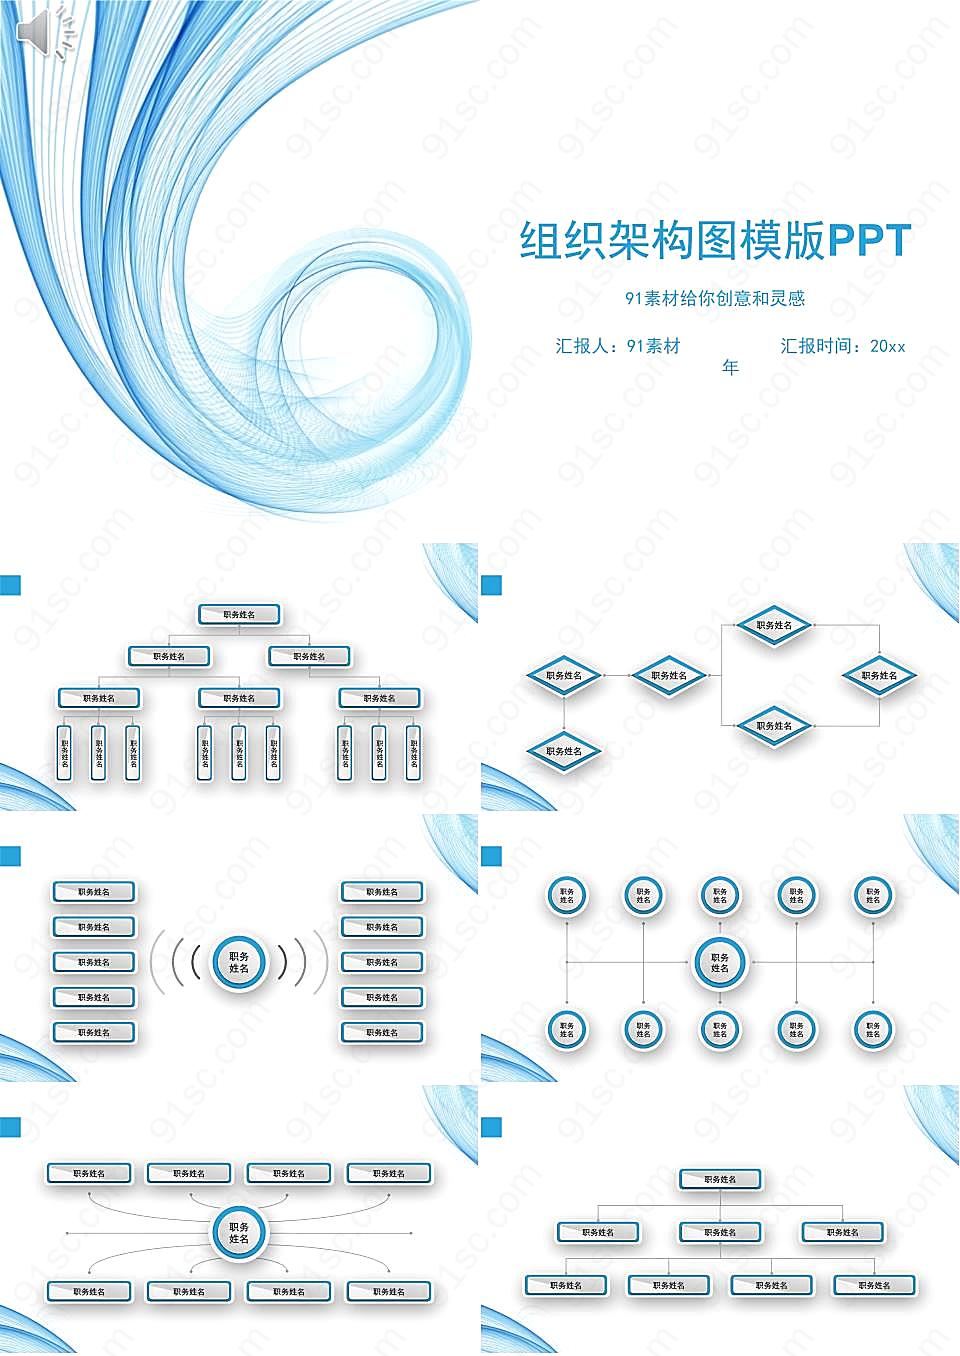 简约组织架构图模版pptppt模板